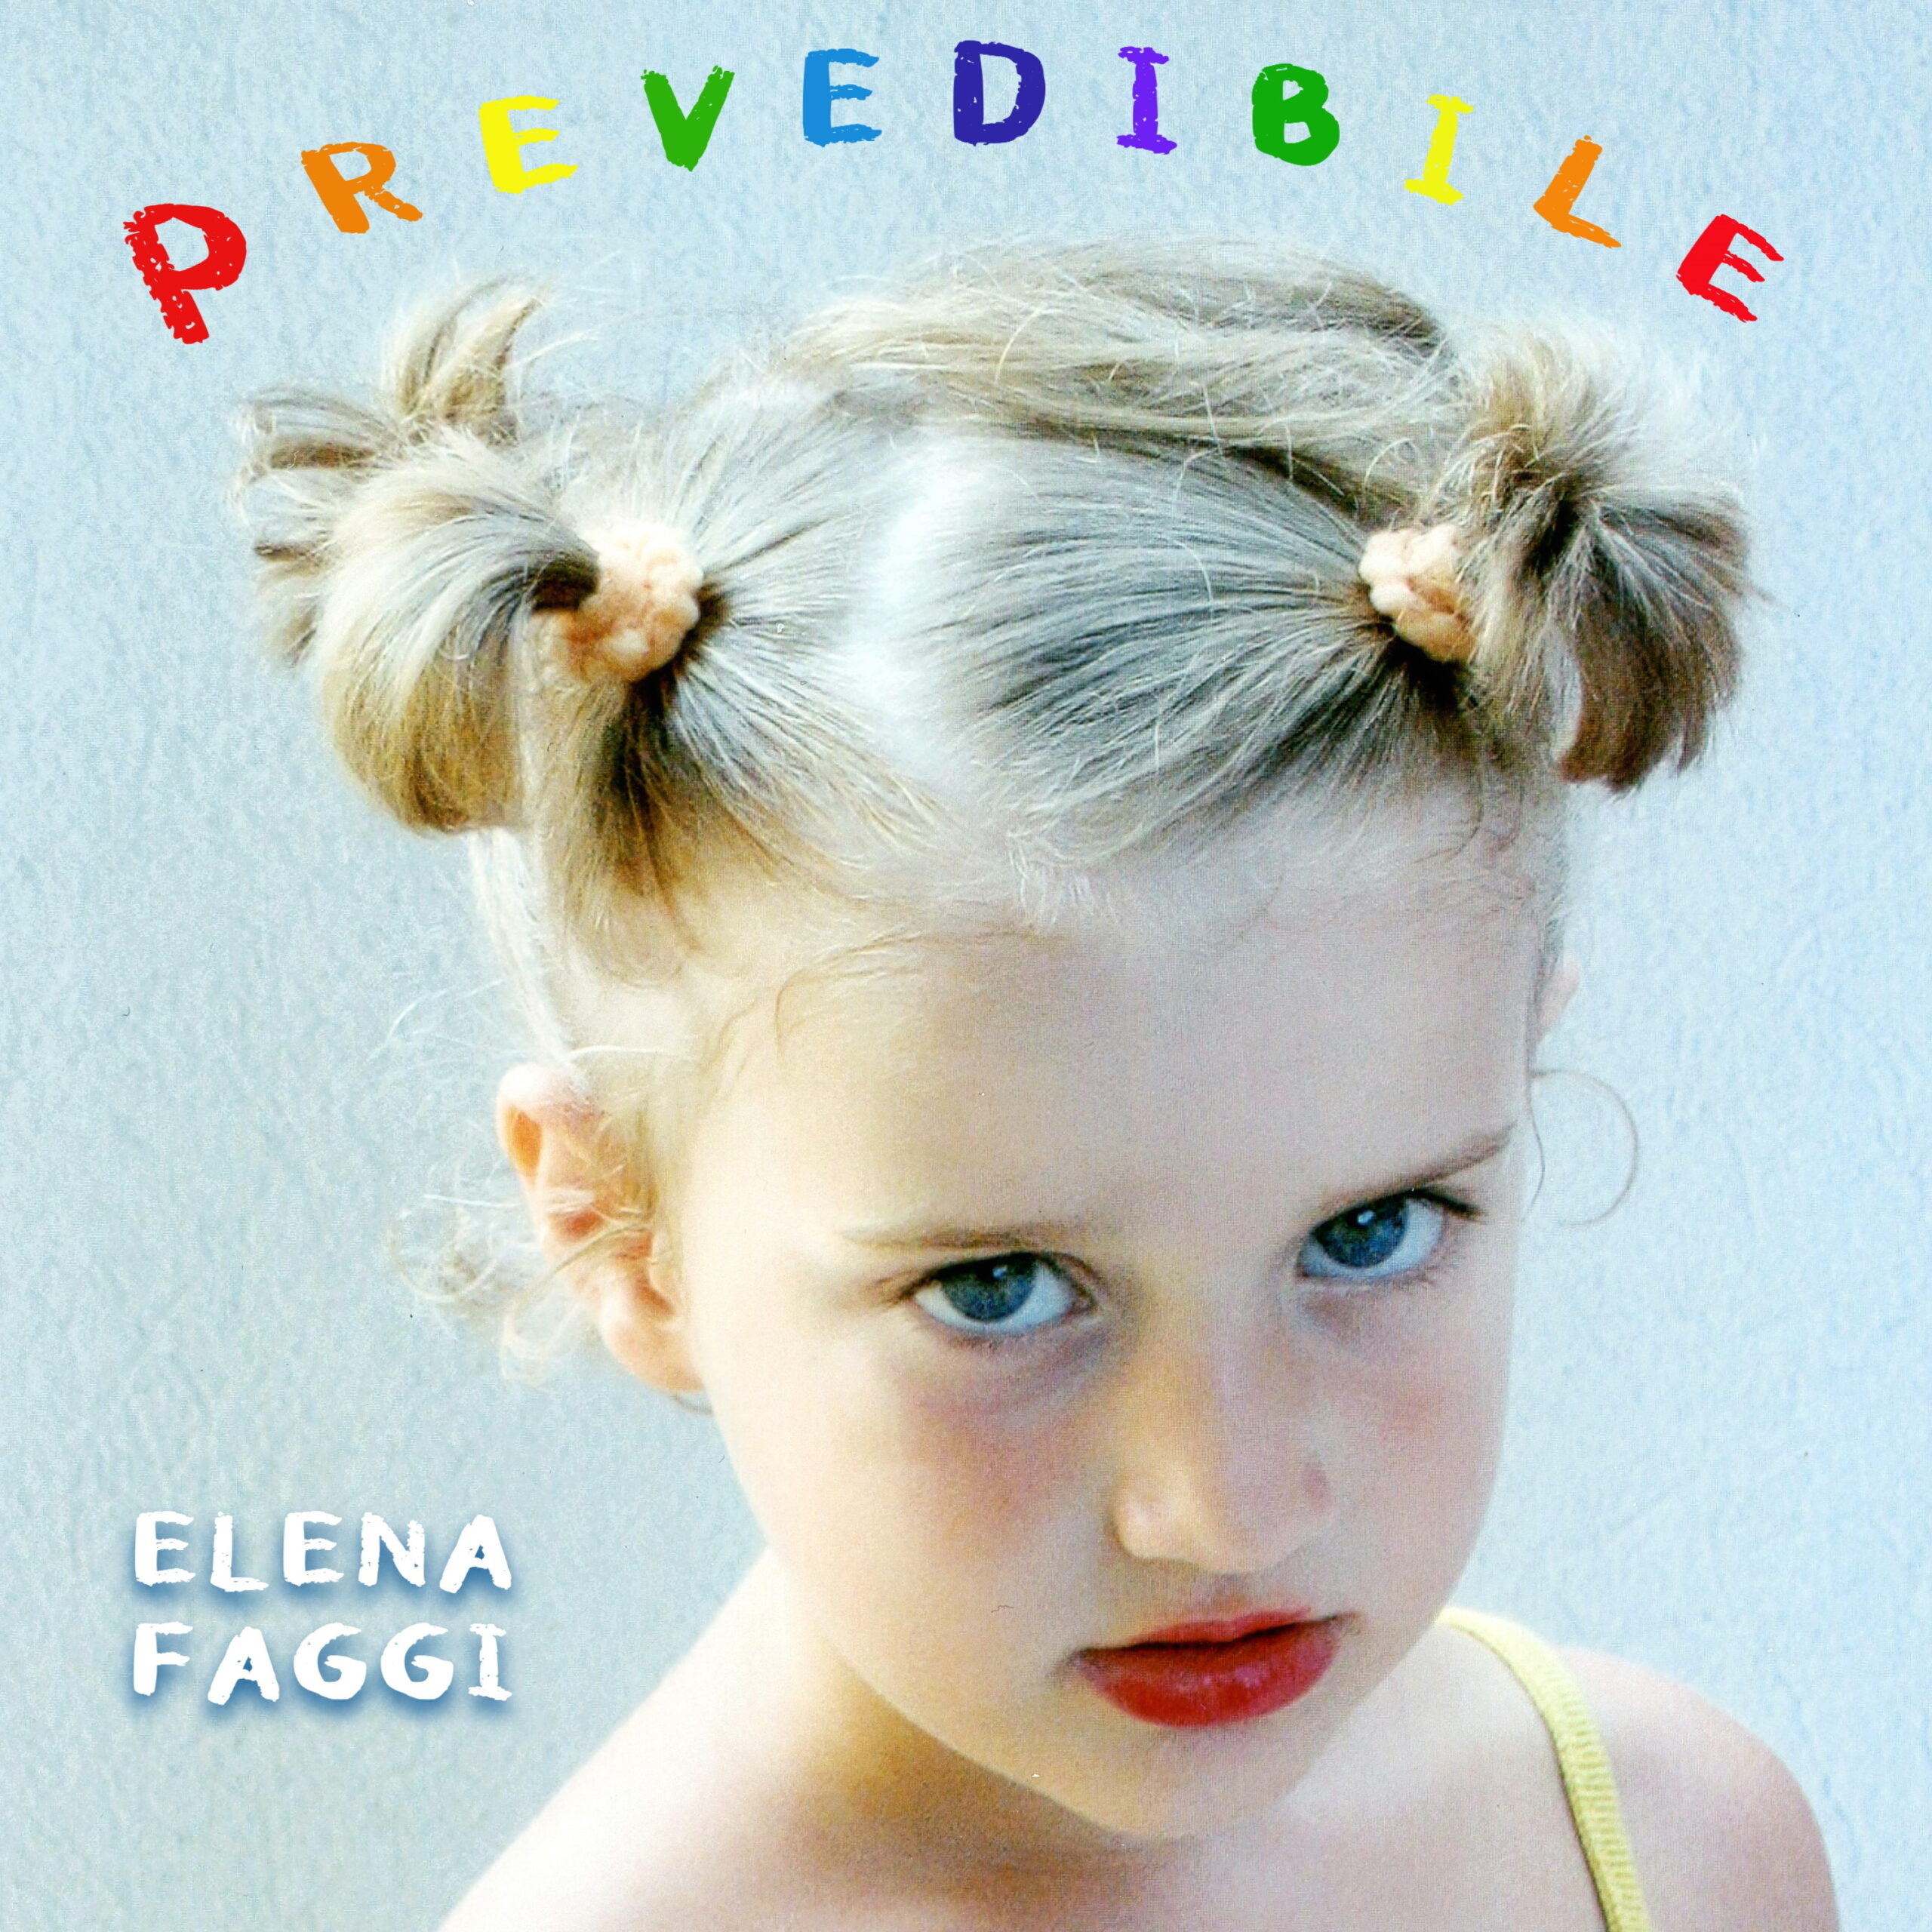 ELENA FAGGI: venerdì 18 novembre esce in digitale “Prevedibile” il primo EP